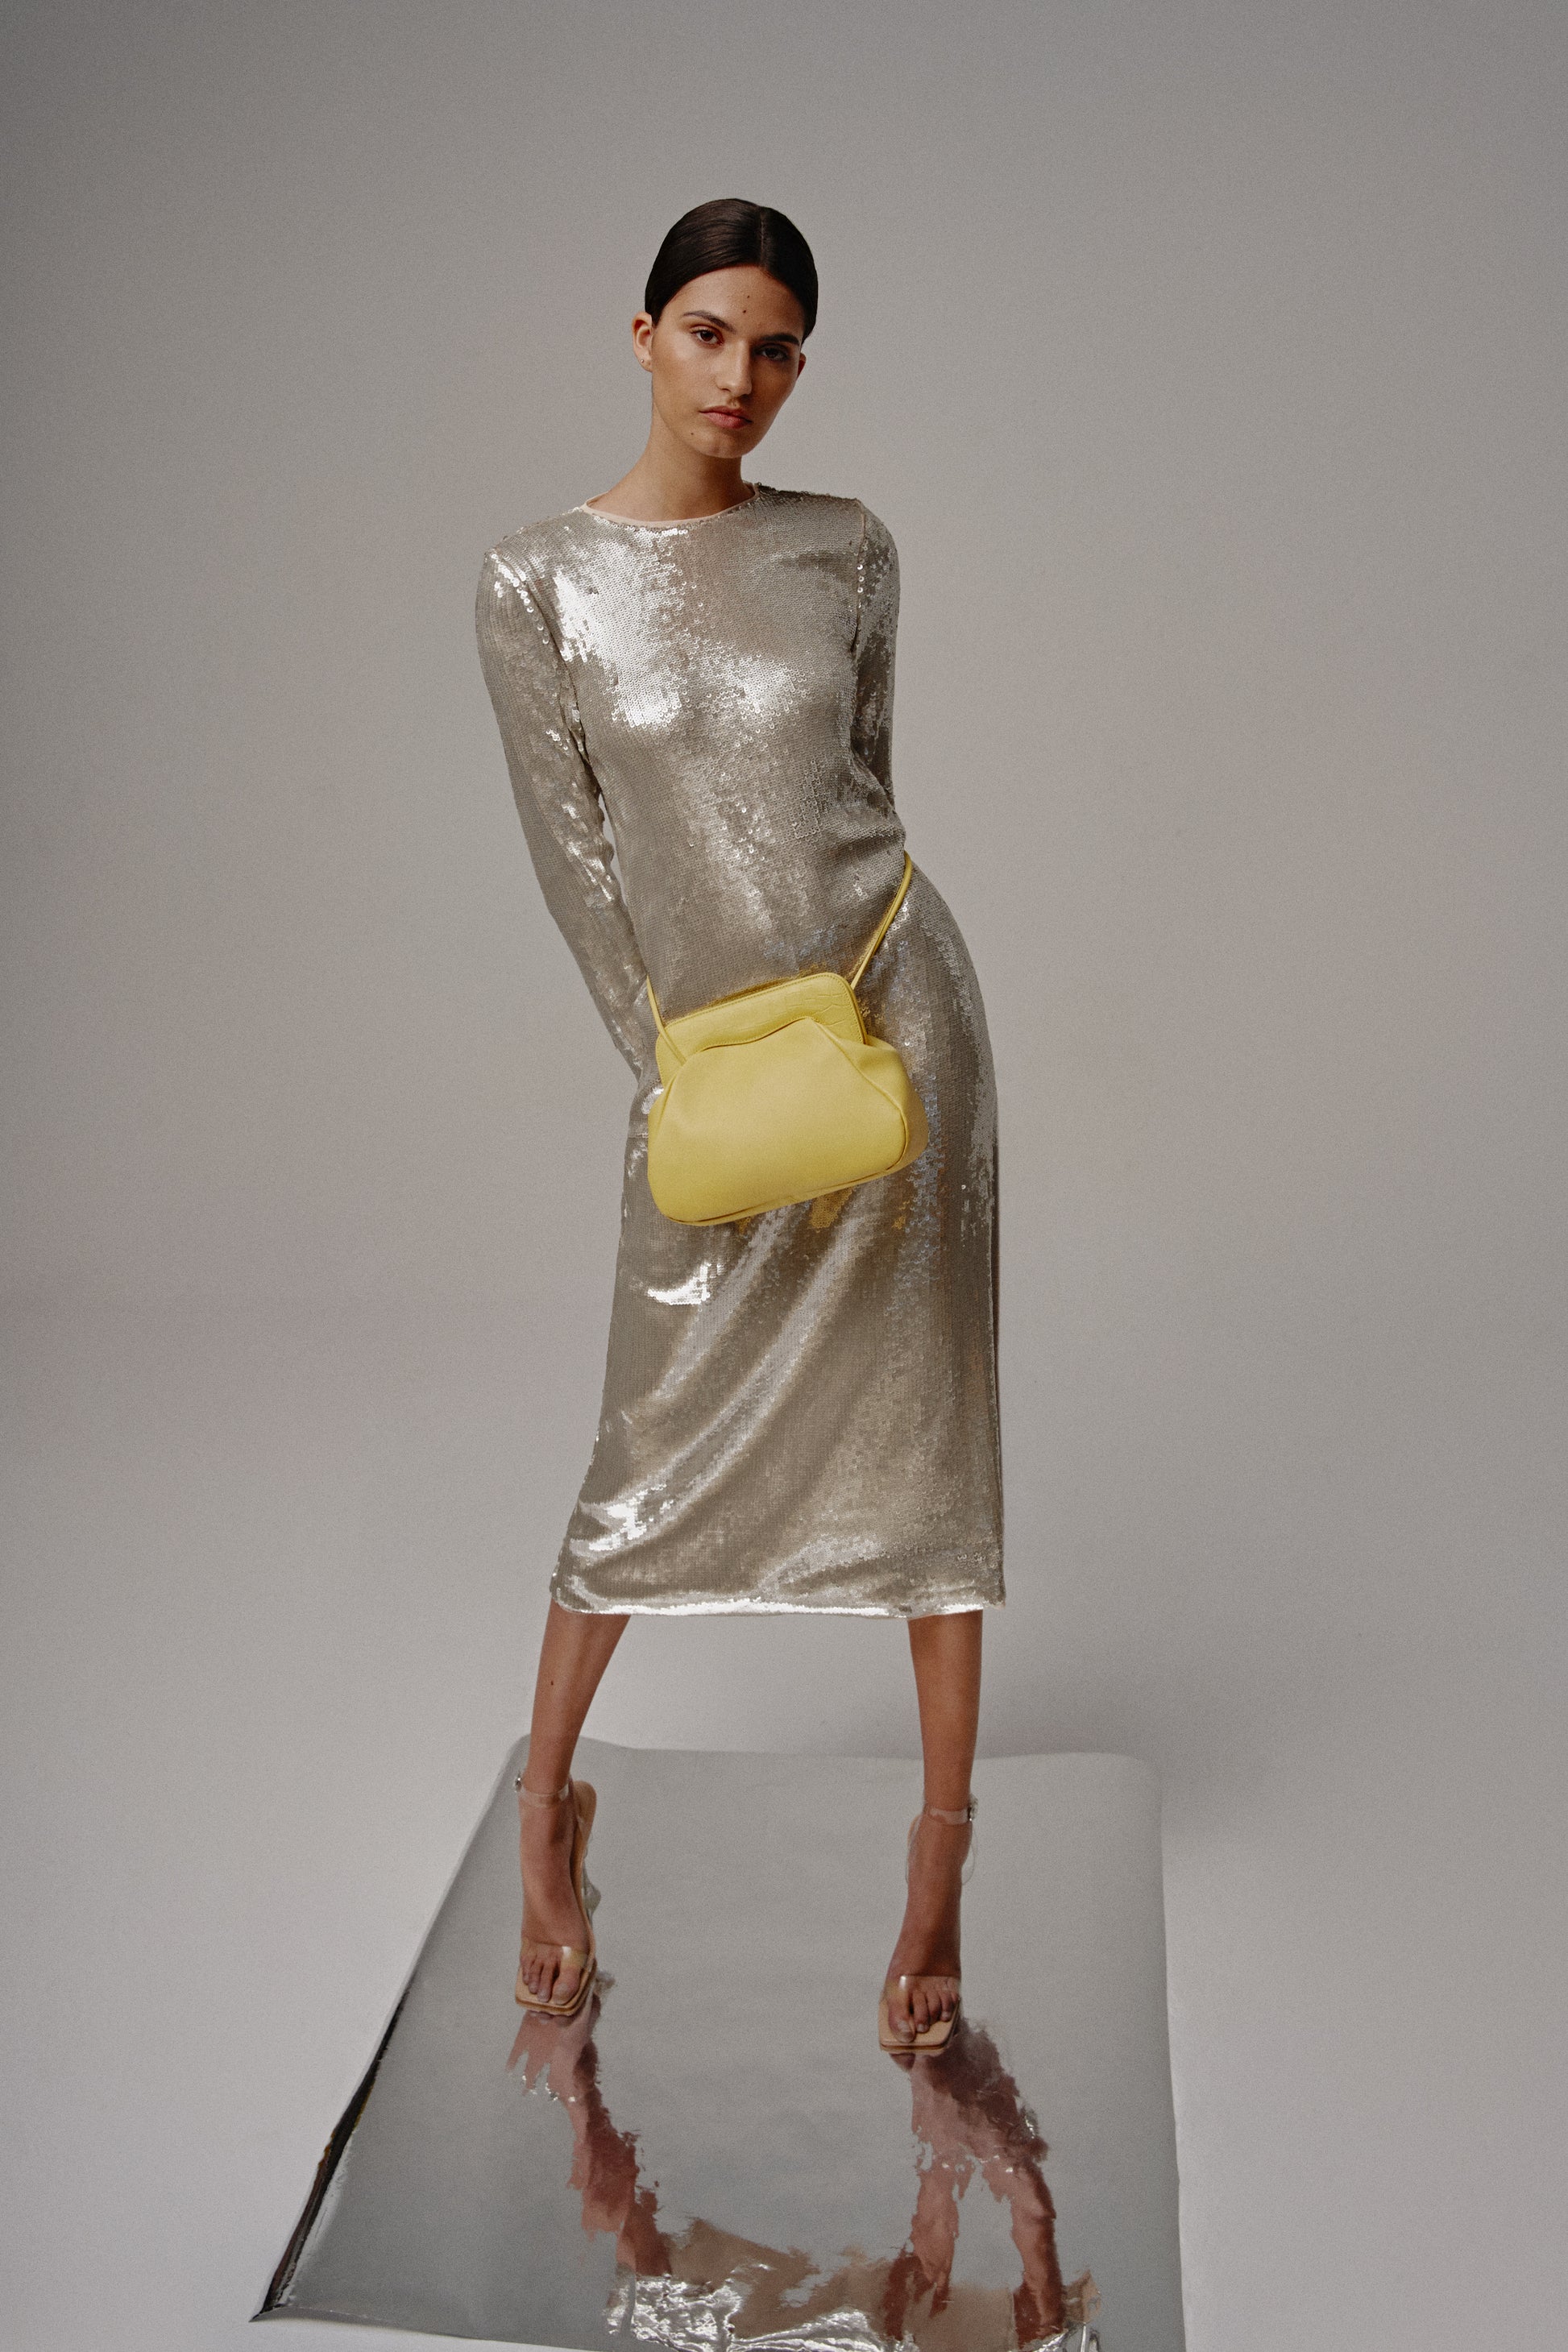 Modelo de gris posando con un bolso amarillo